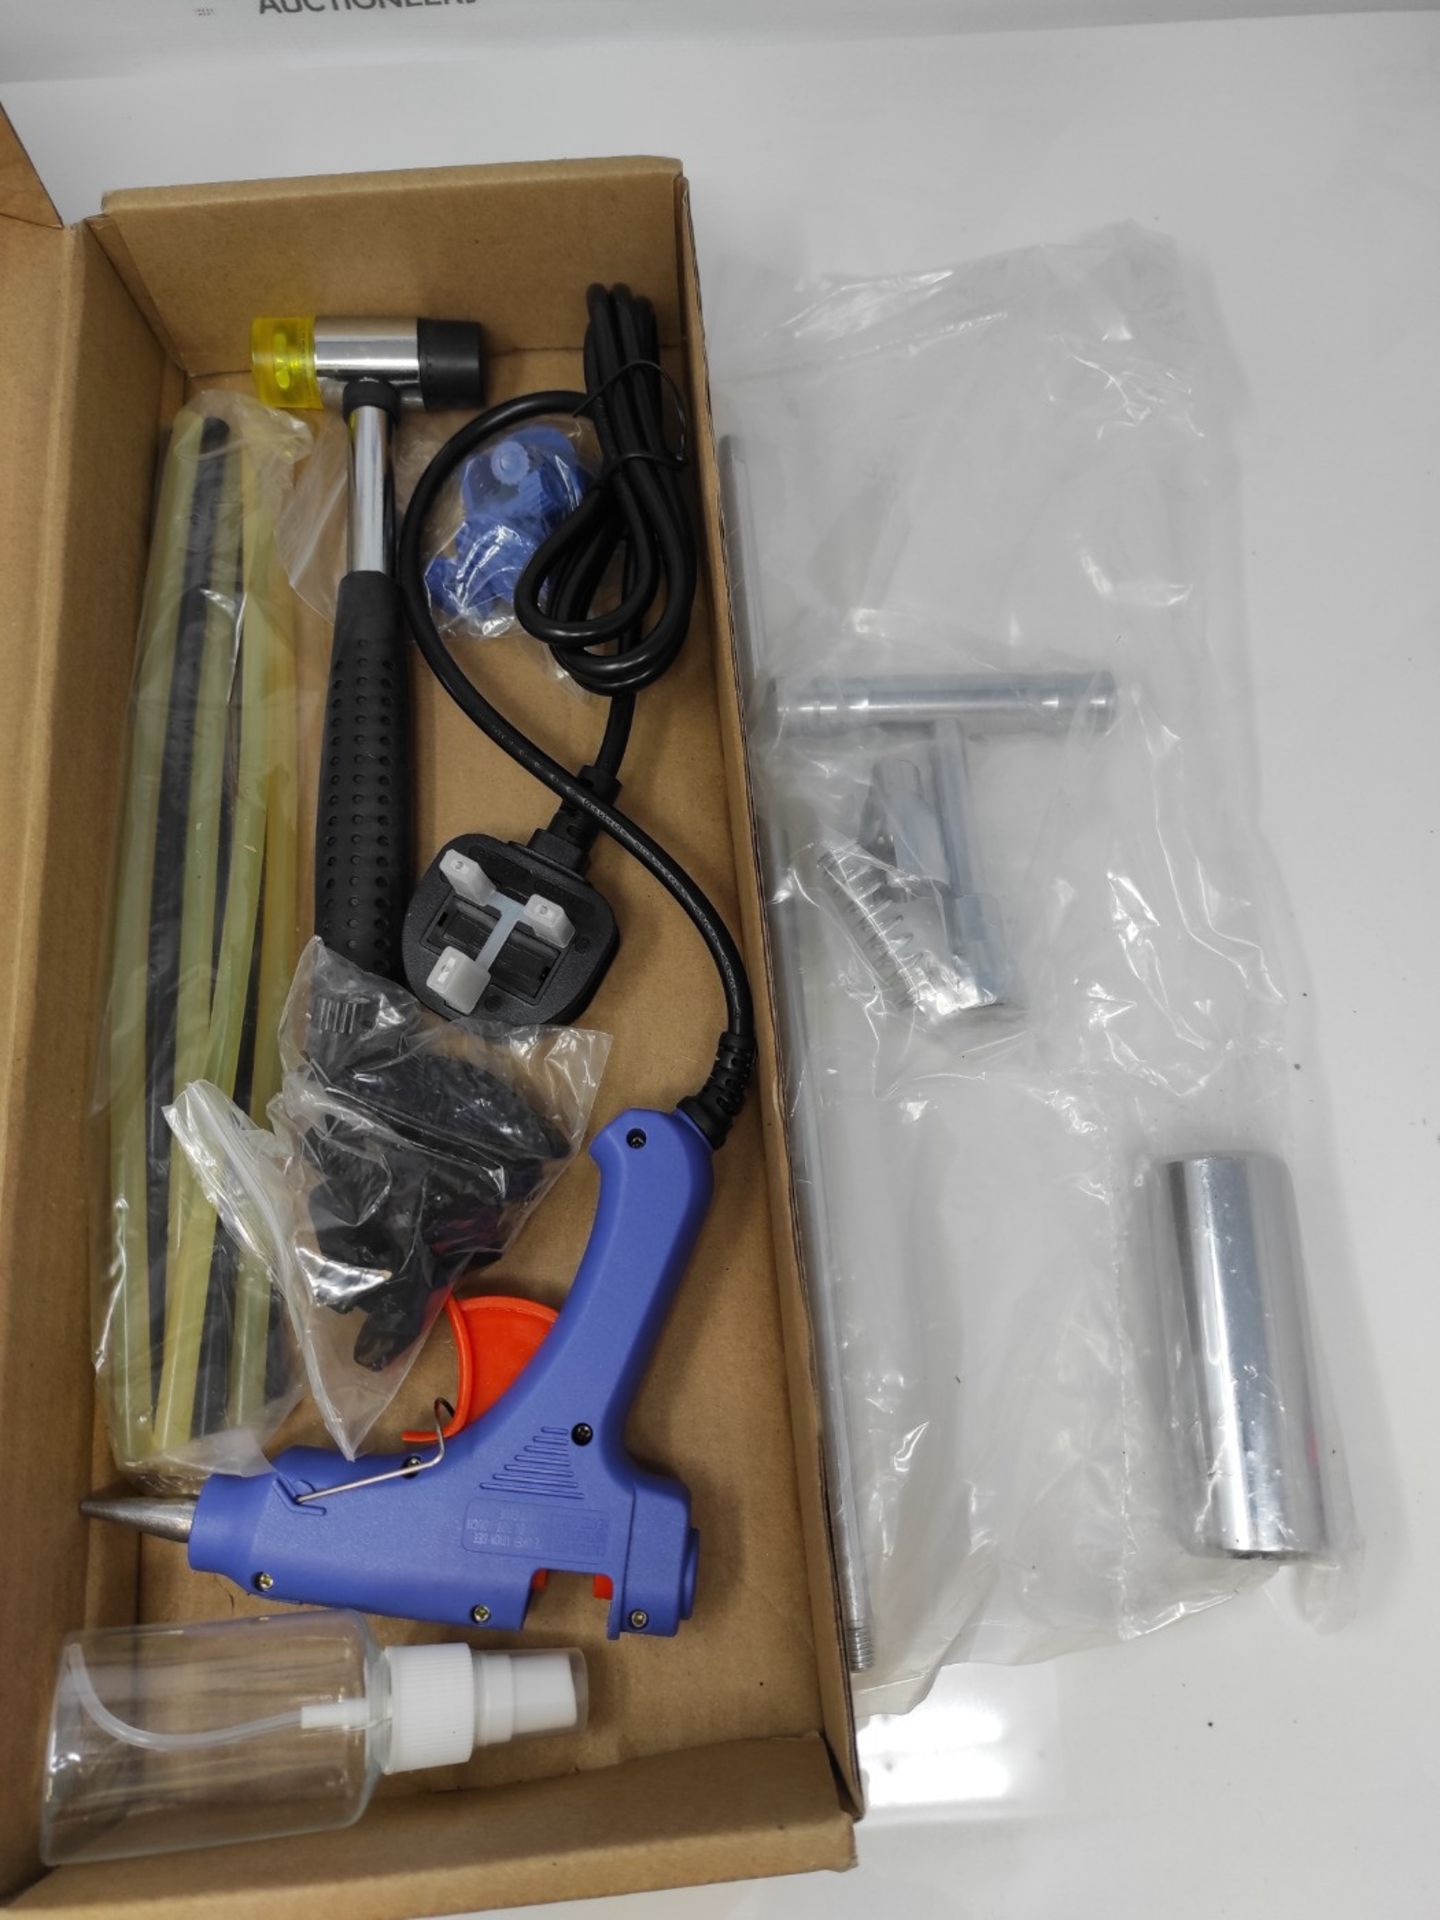 Manelord Auto Body Dent Puller - Dent Repair kit with Slide Hammer T bar Dent Puller f